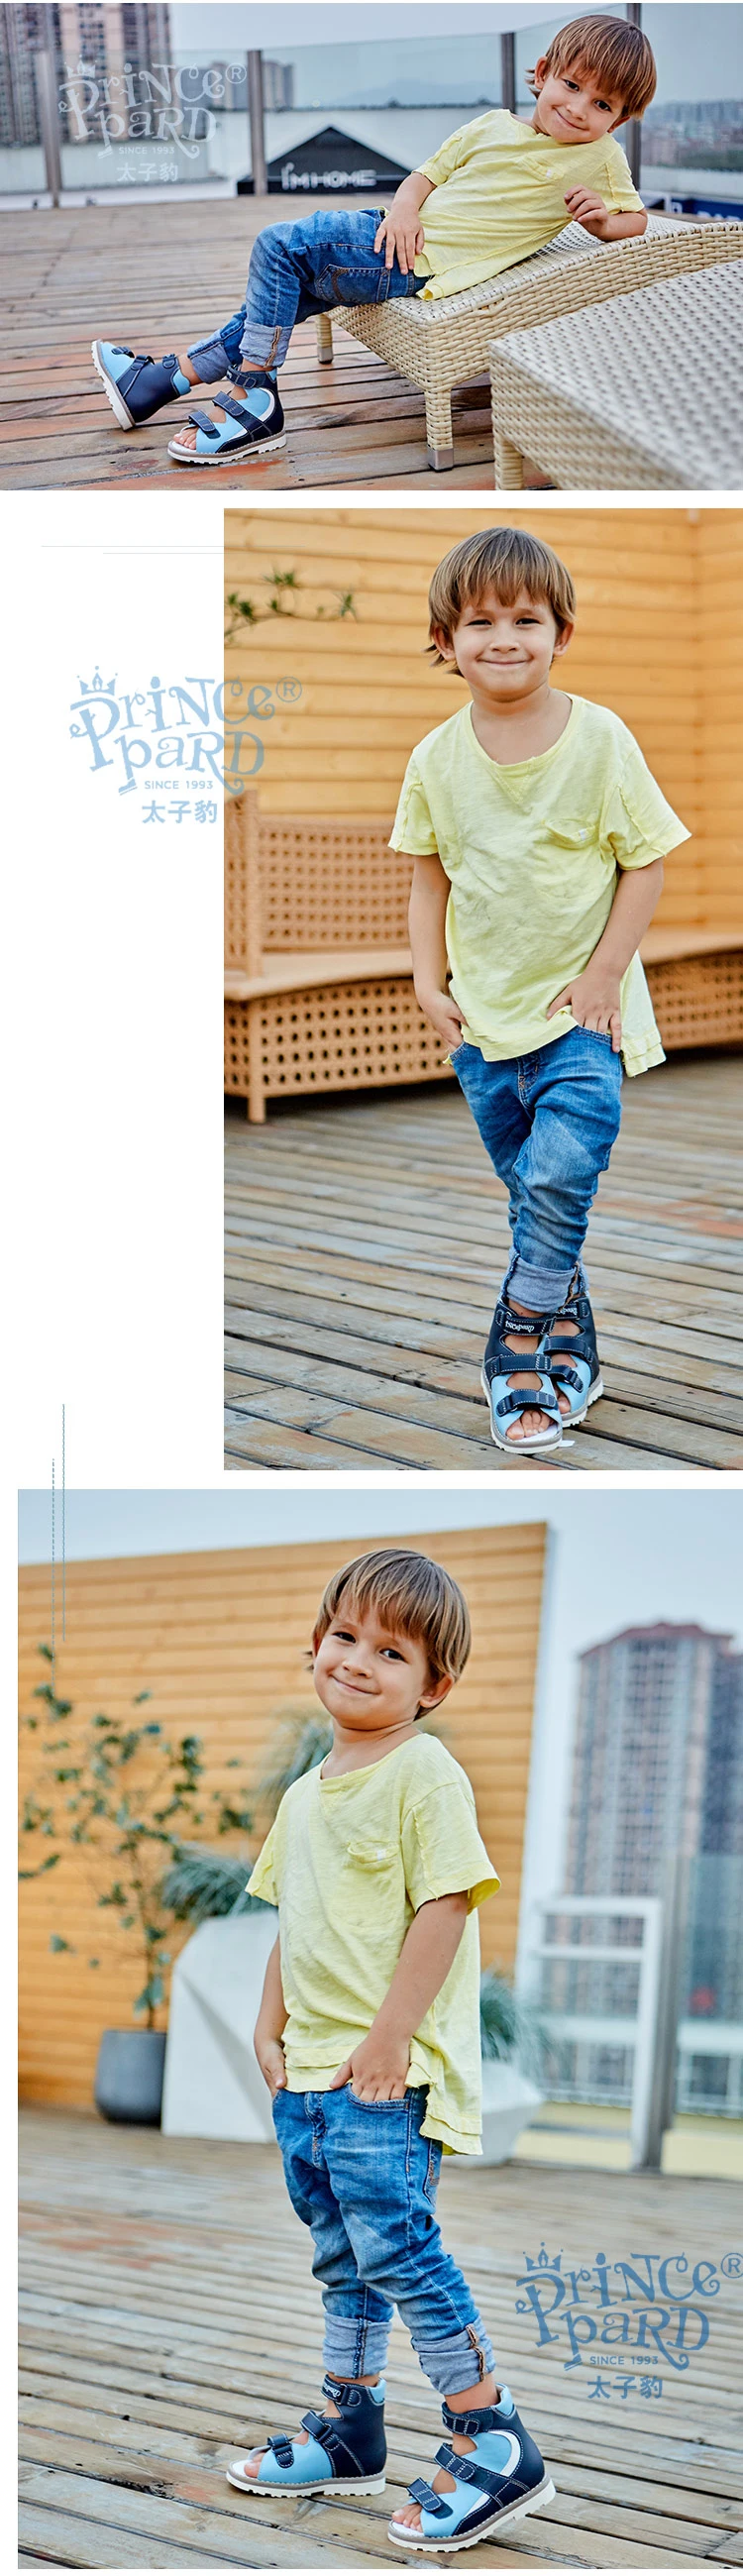 Princepard/Новинка года; детская летняя ортопедическая обувь для мальчиков; Цвет Синий; верх из натуральной кожи; подкладка из свиной кожи; сандалии для мальчиков